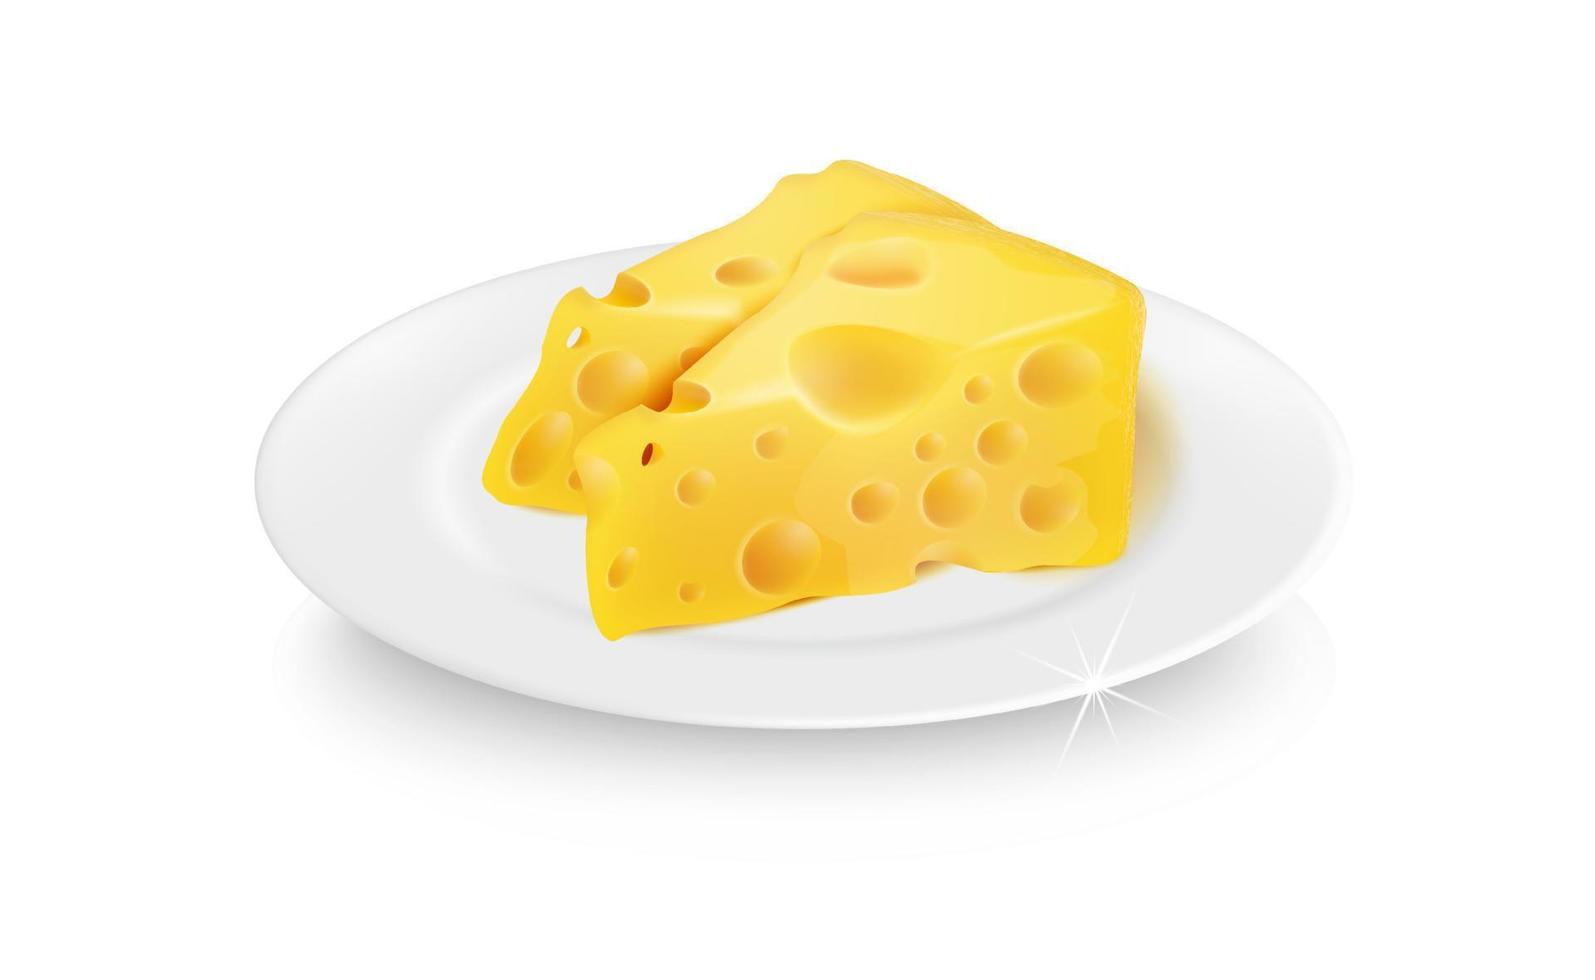 Vektorrealistischer 3D-Käse auf einem weißen Teller. leckere Käsestücke. Lebensmitteldekoration. vektor